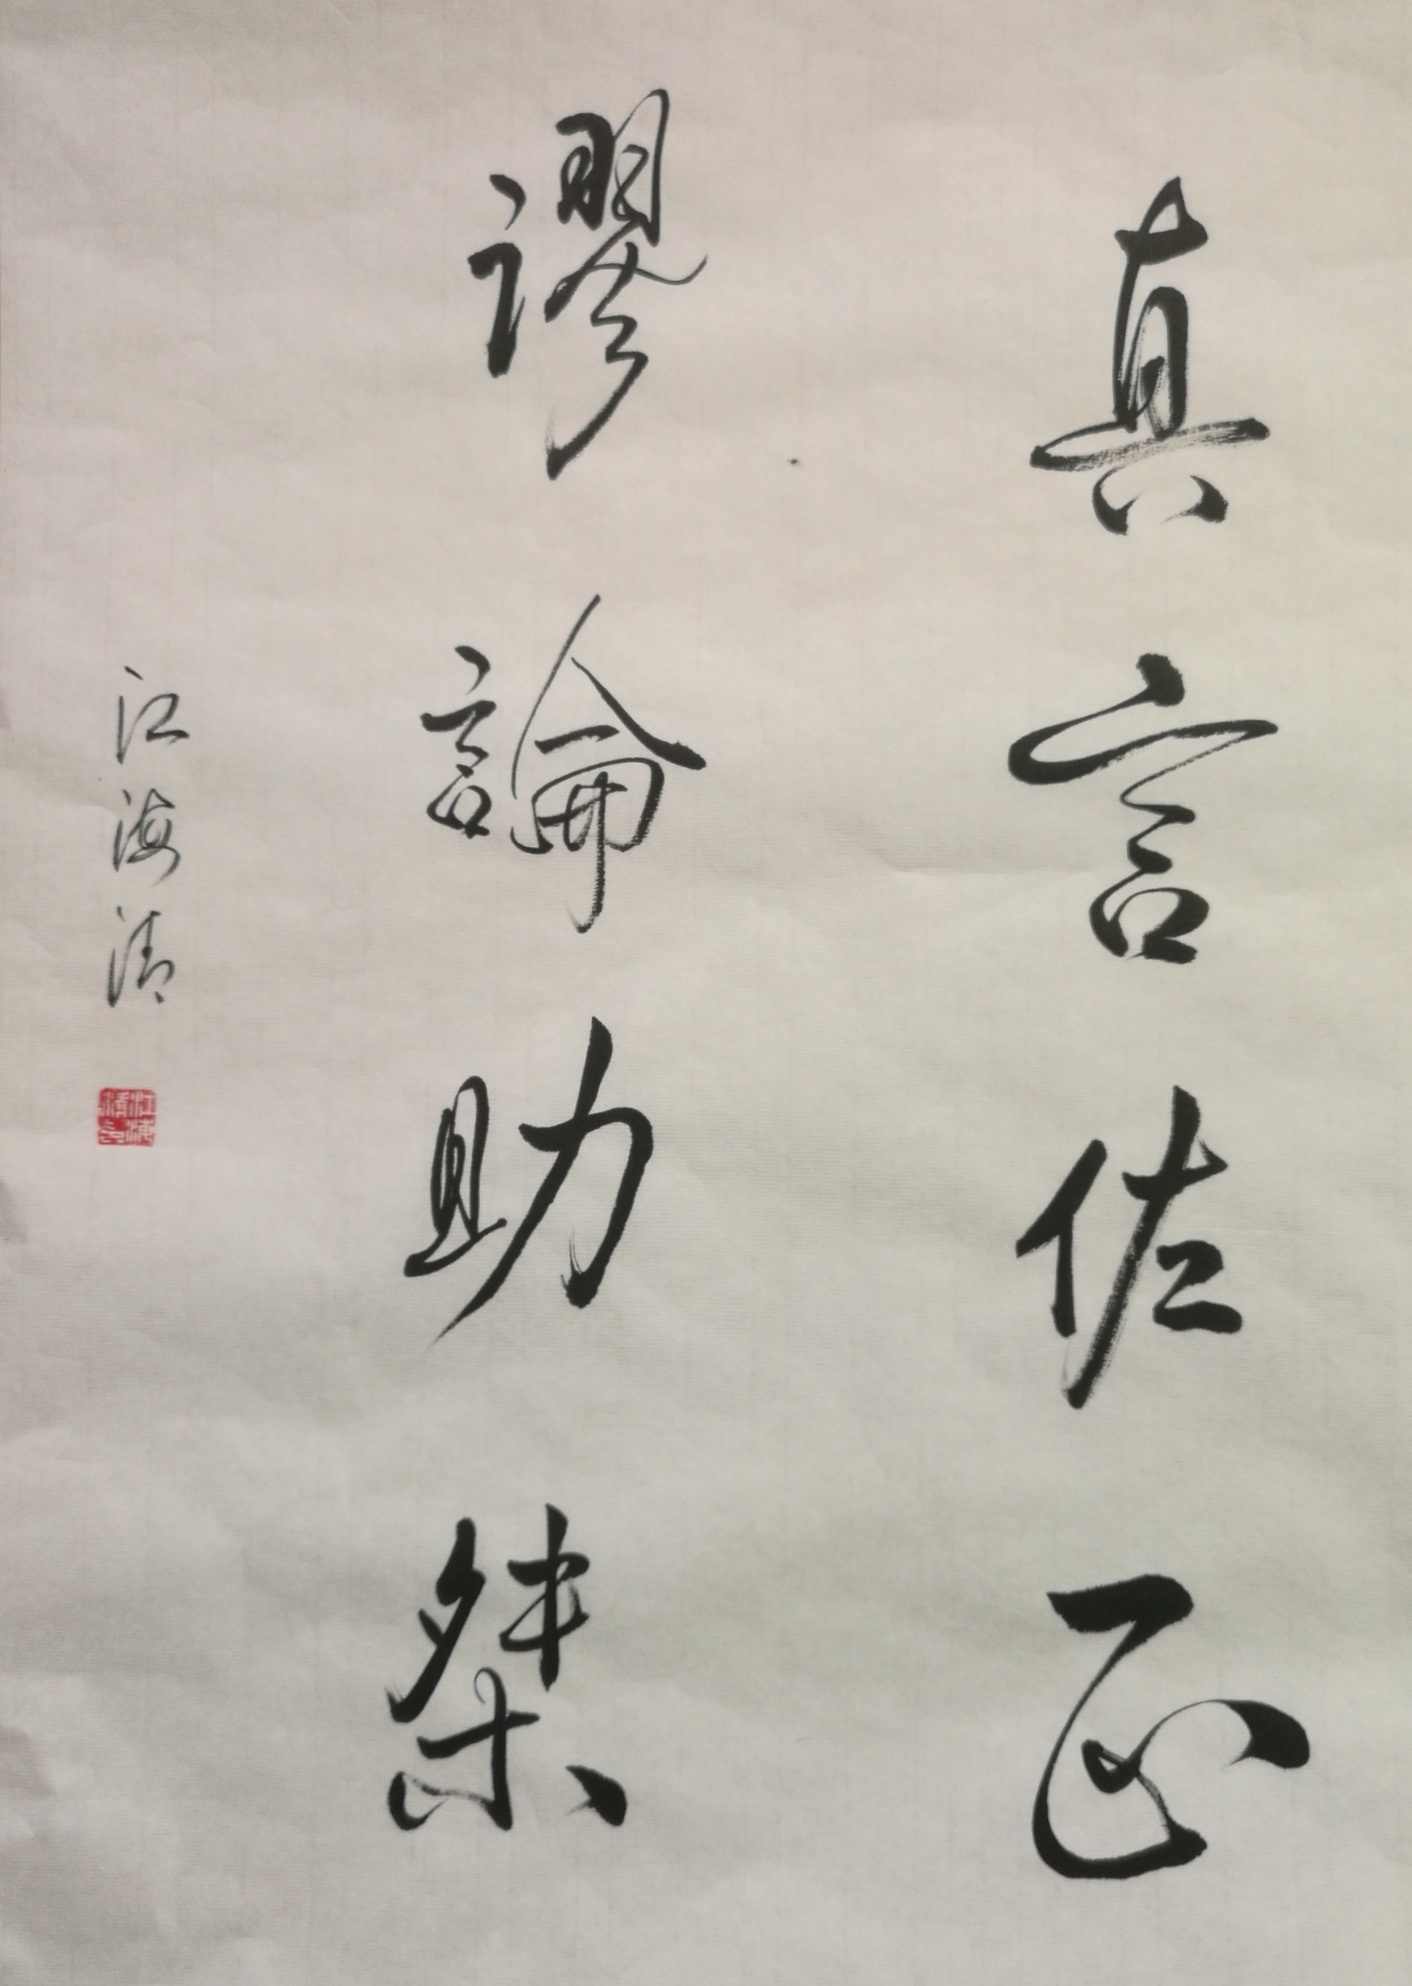 中国大众文化学会名人书画艺术发展委员会——江海清